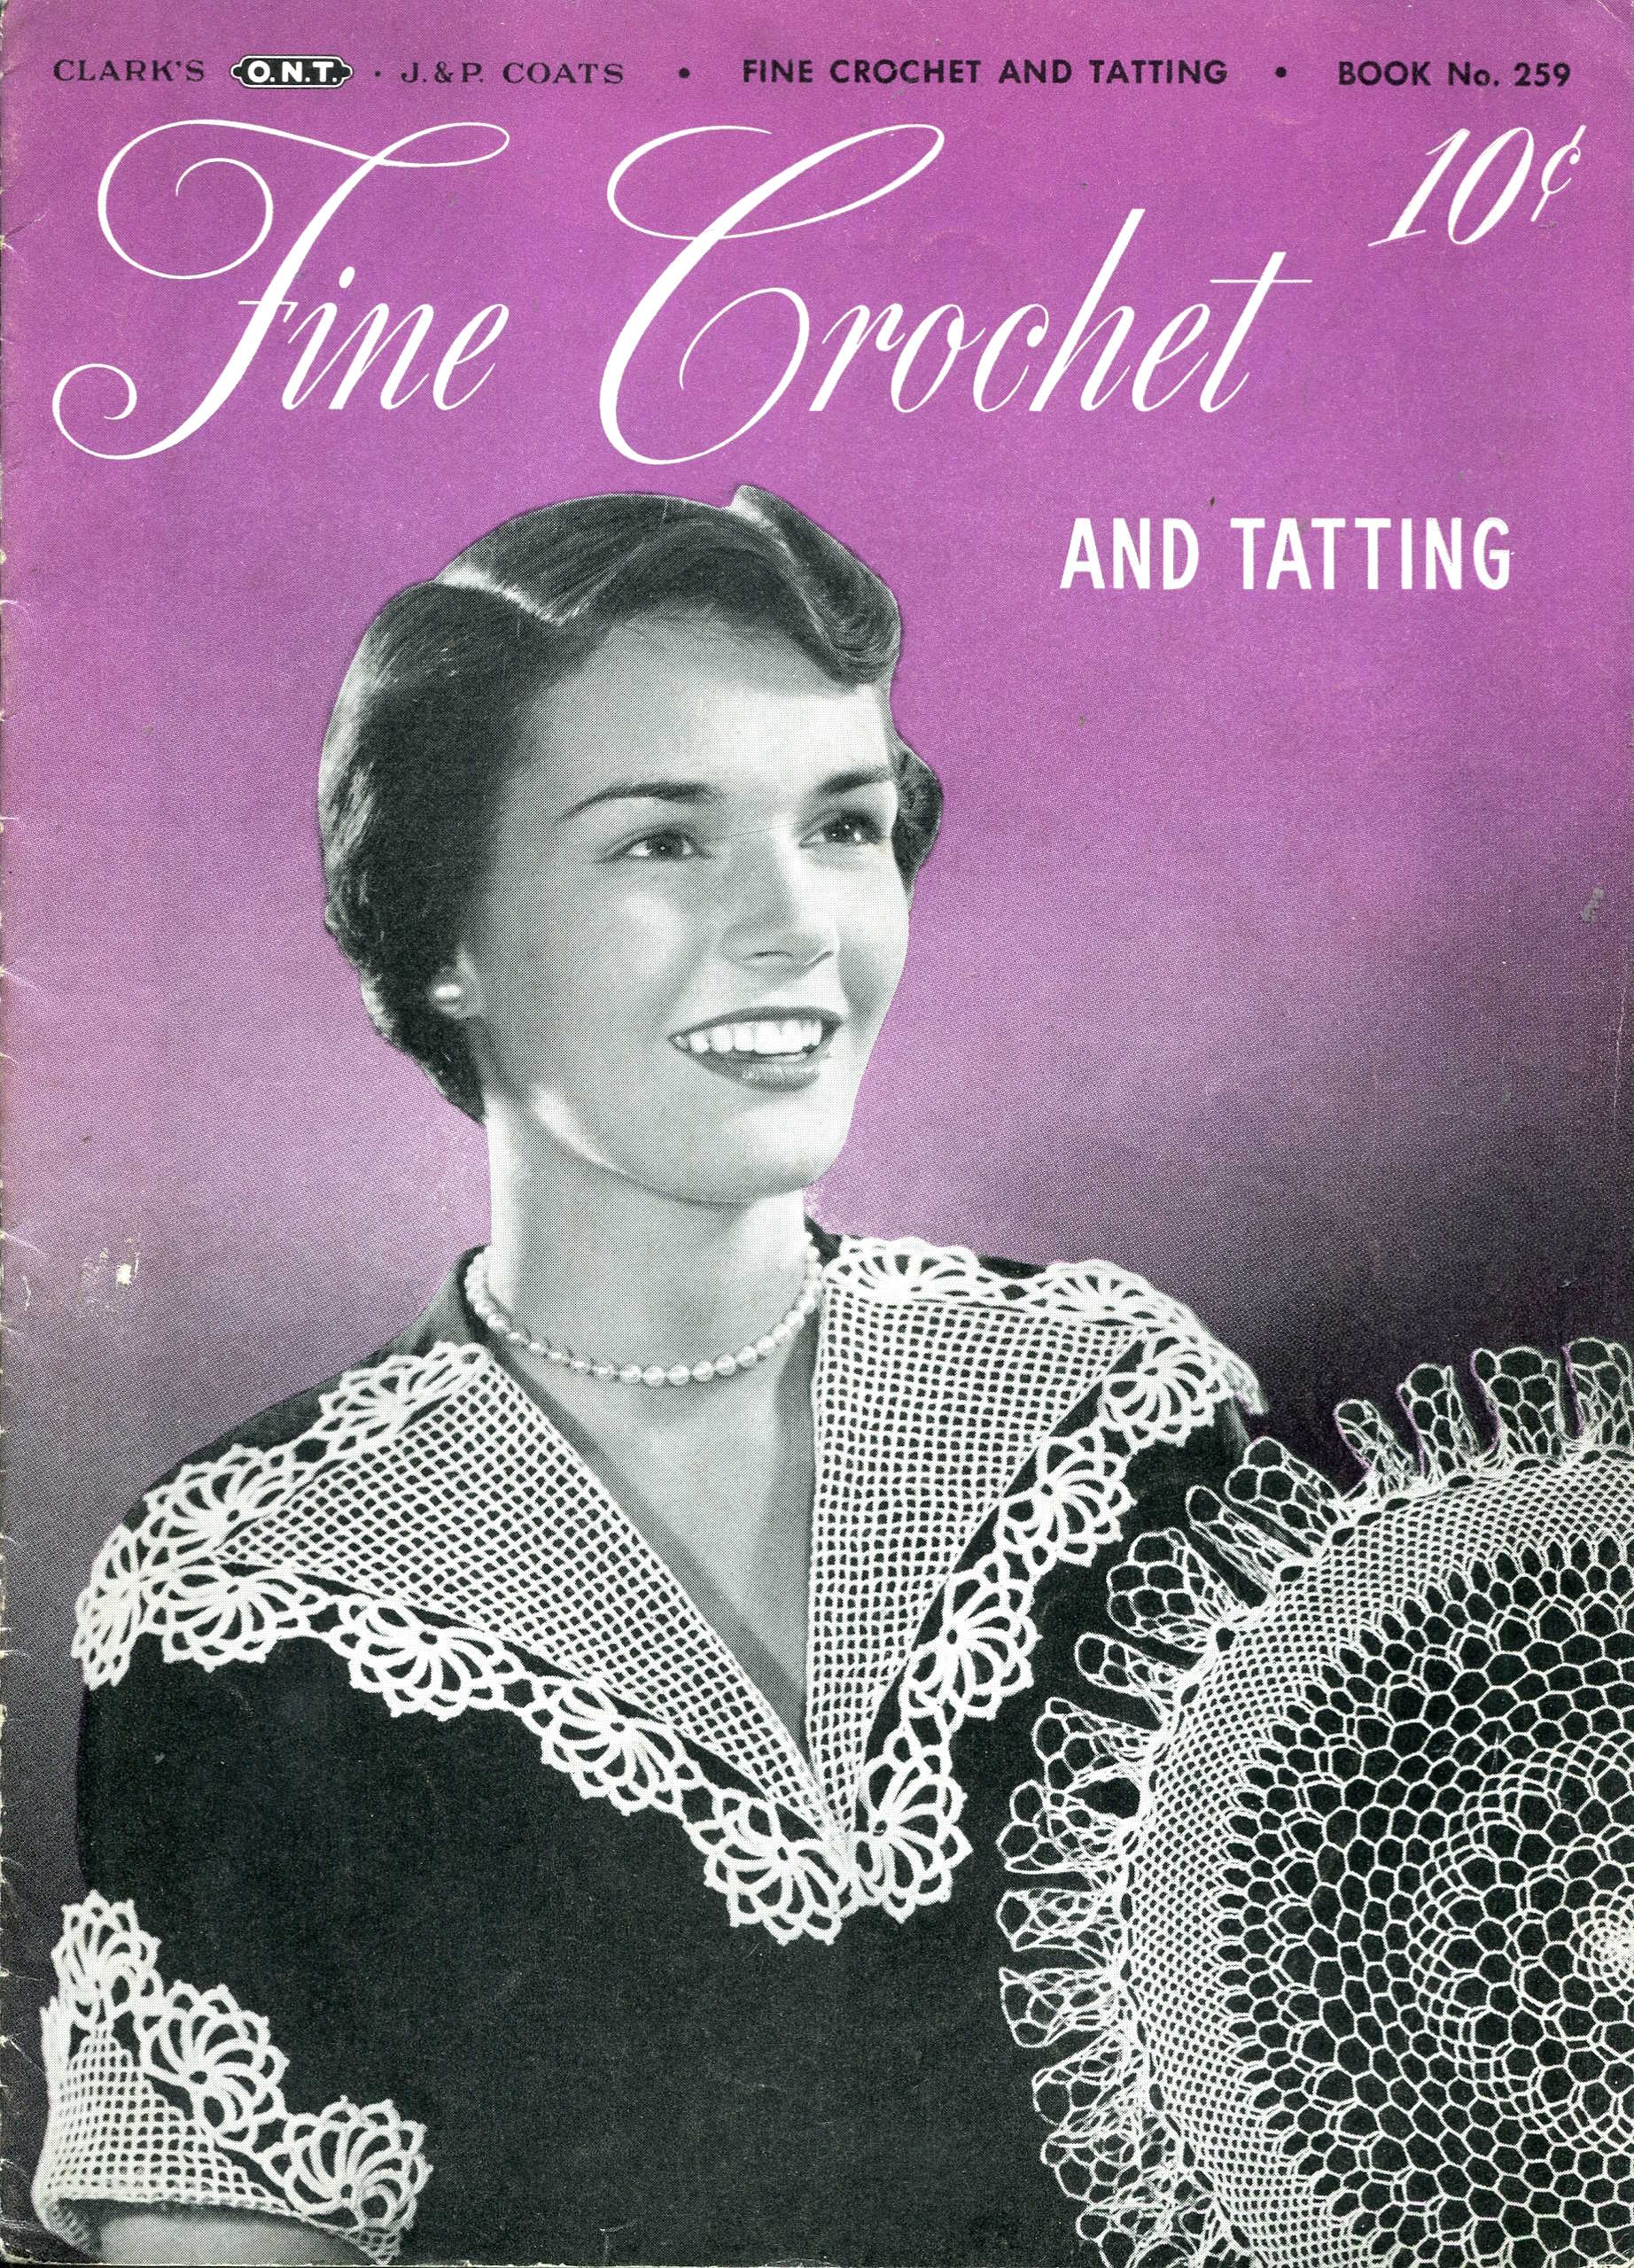 Lady wearing crochet and tatting